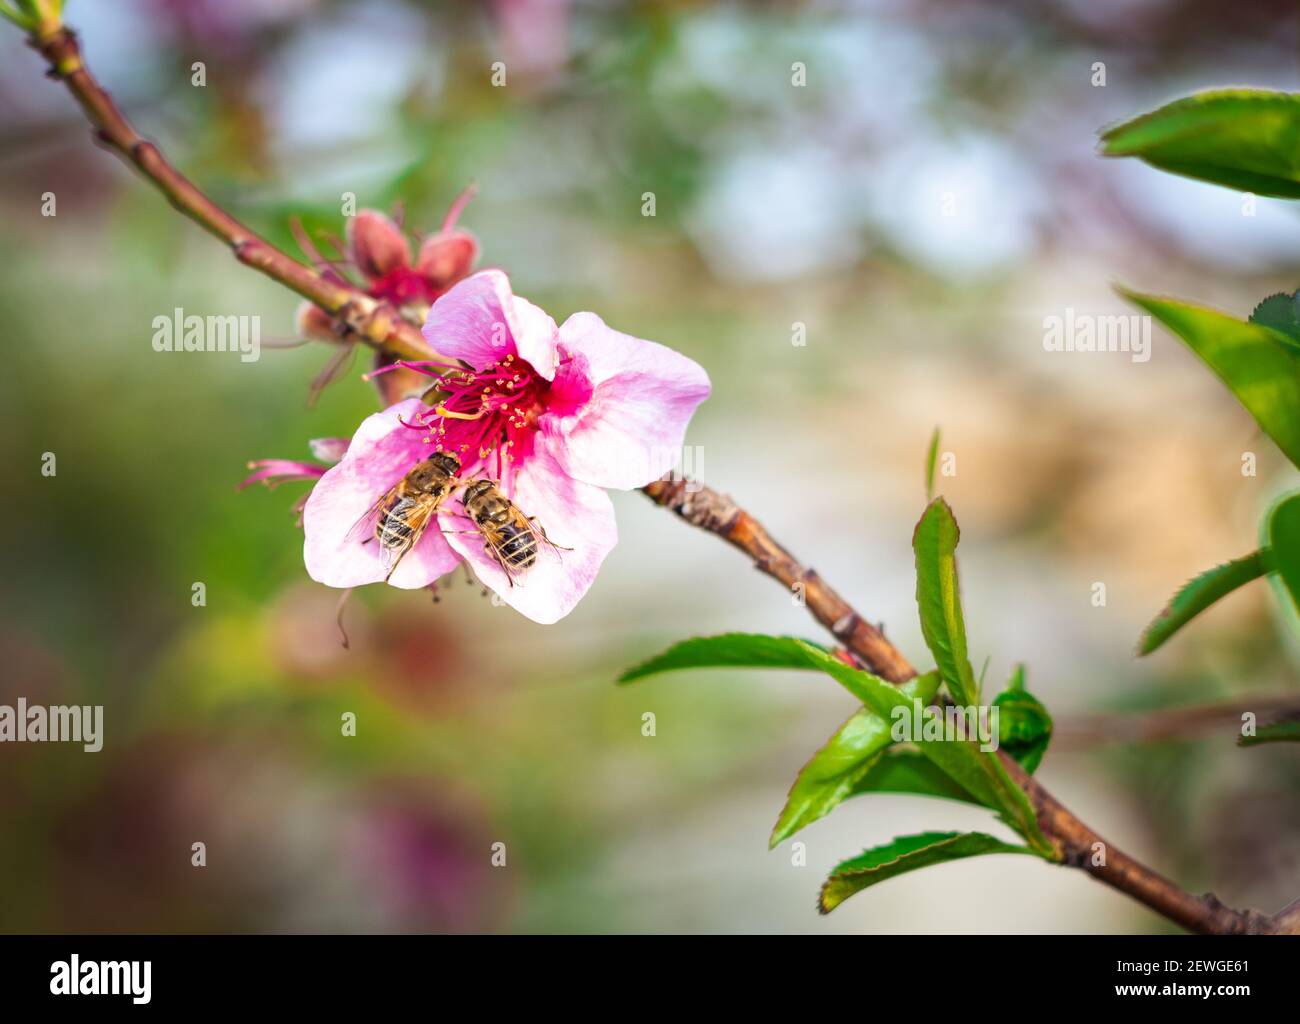 Zwei Bienen bestäuben und ernähren sich am Mittag im Garten vom Nektar der rosa Blume des Pfirsichbaumes. Stockfoto